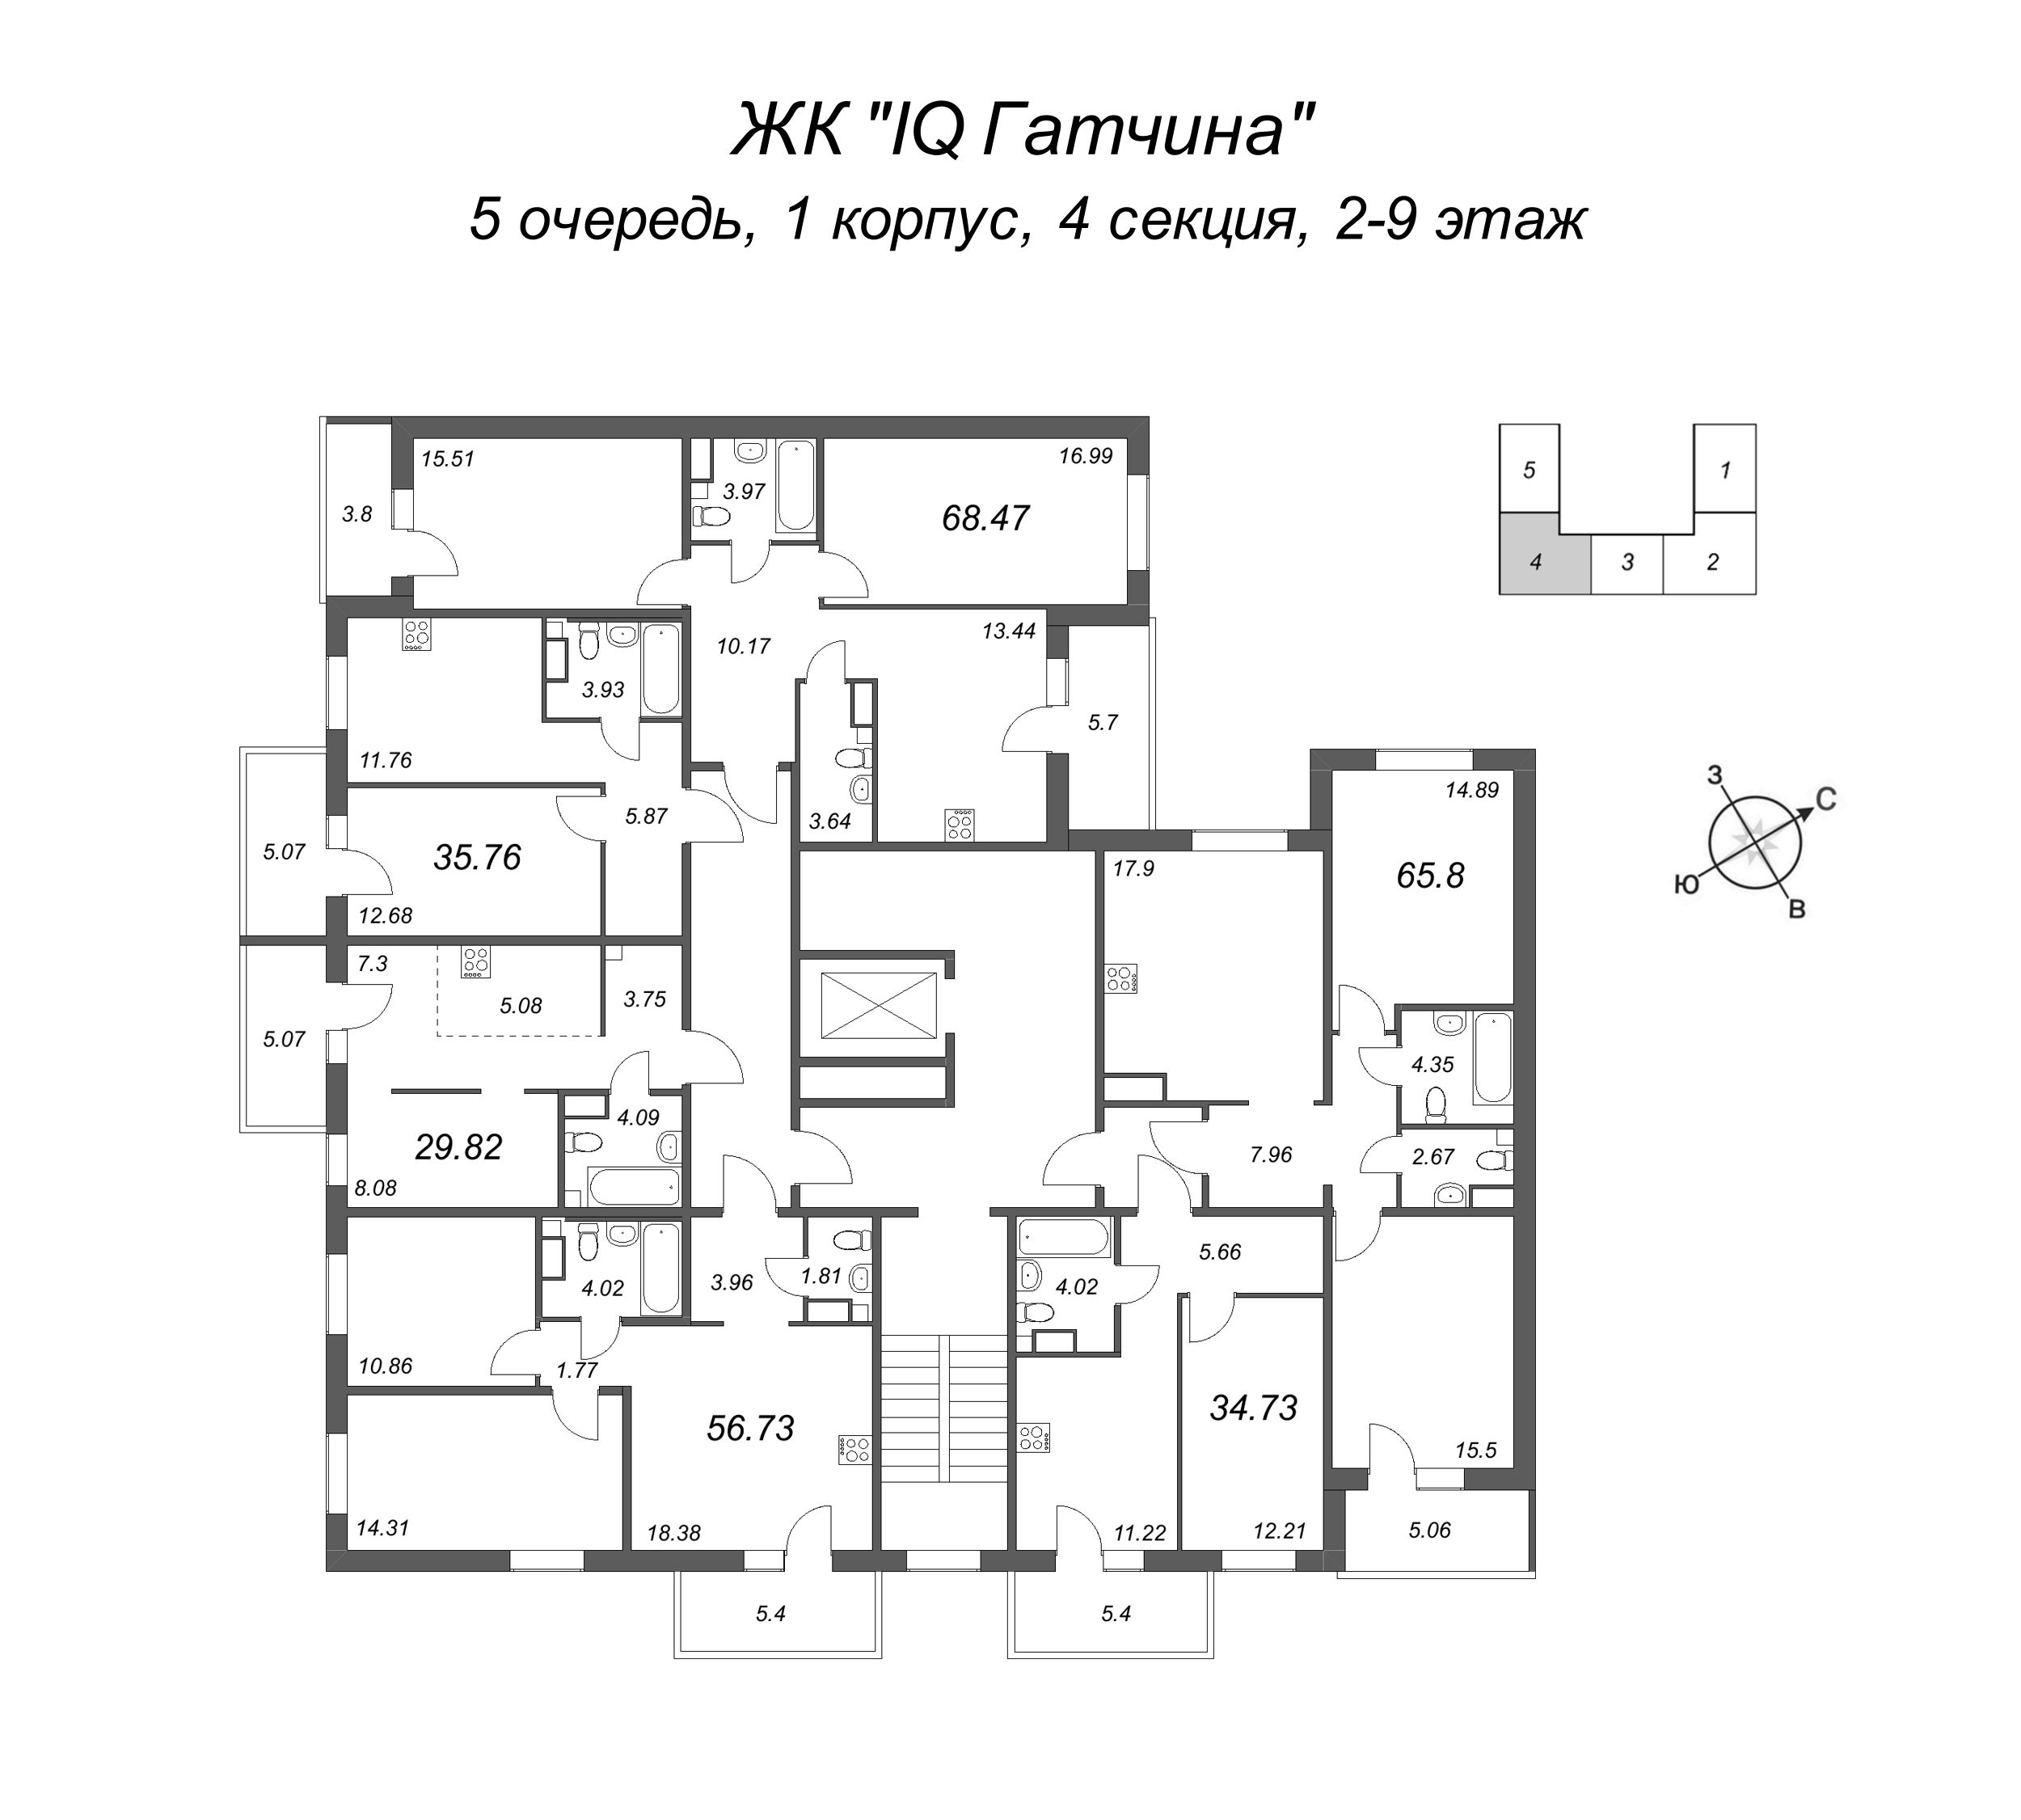 1-комнатная квартира, 35.86 м² в ЖК "IQ Гатчина" - планировка этажа